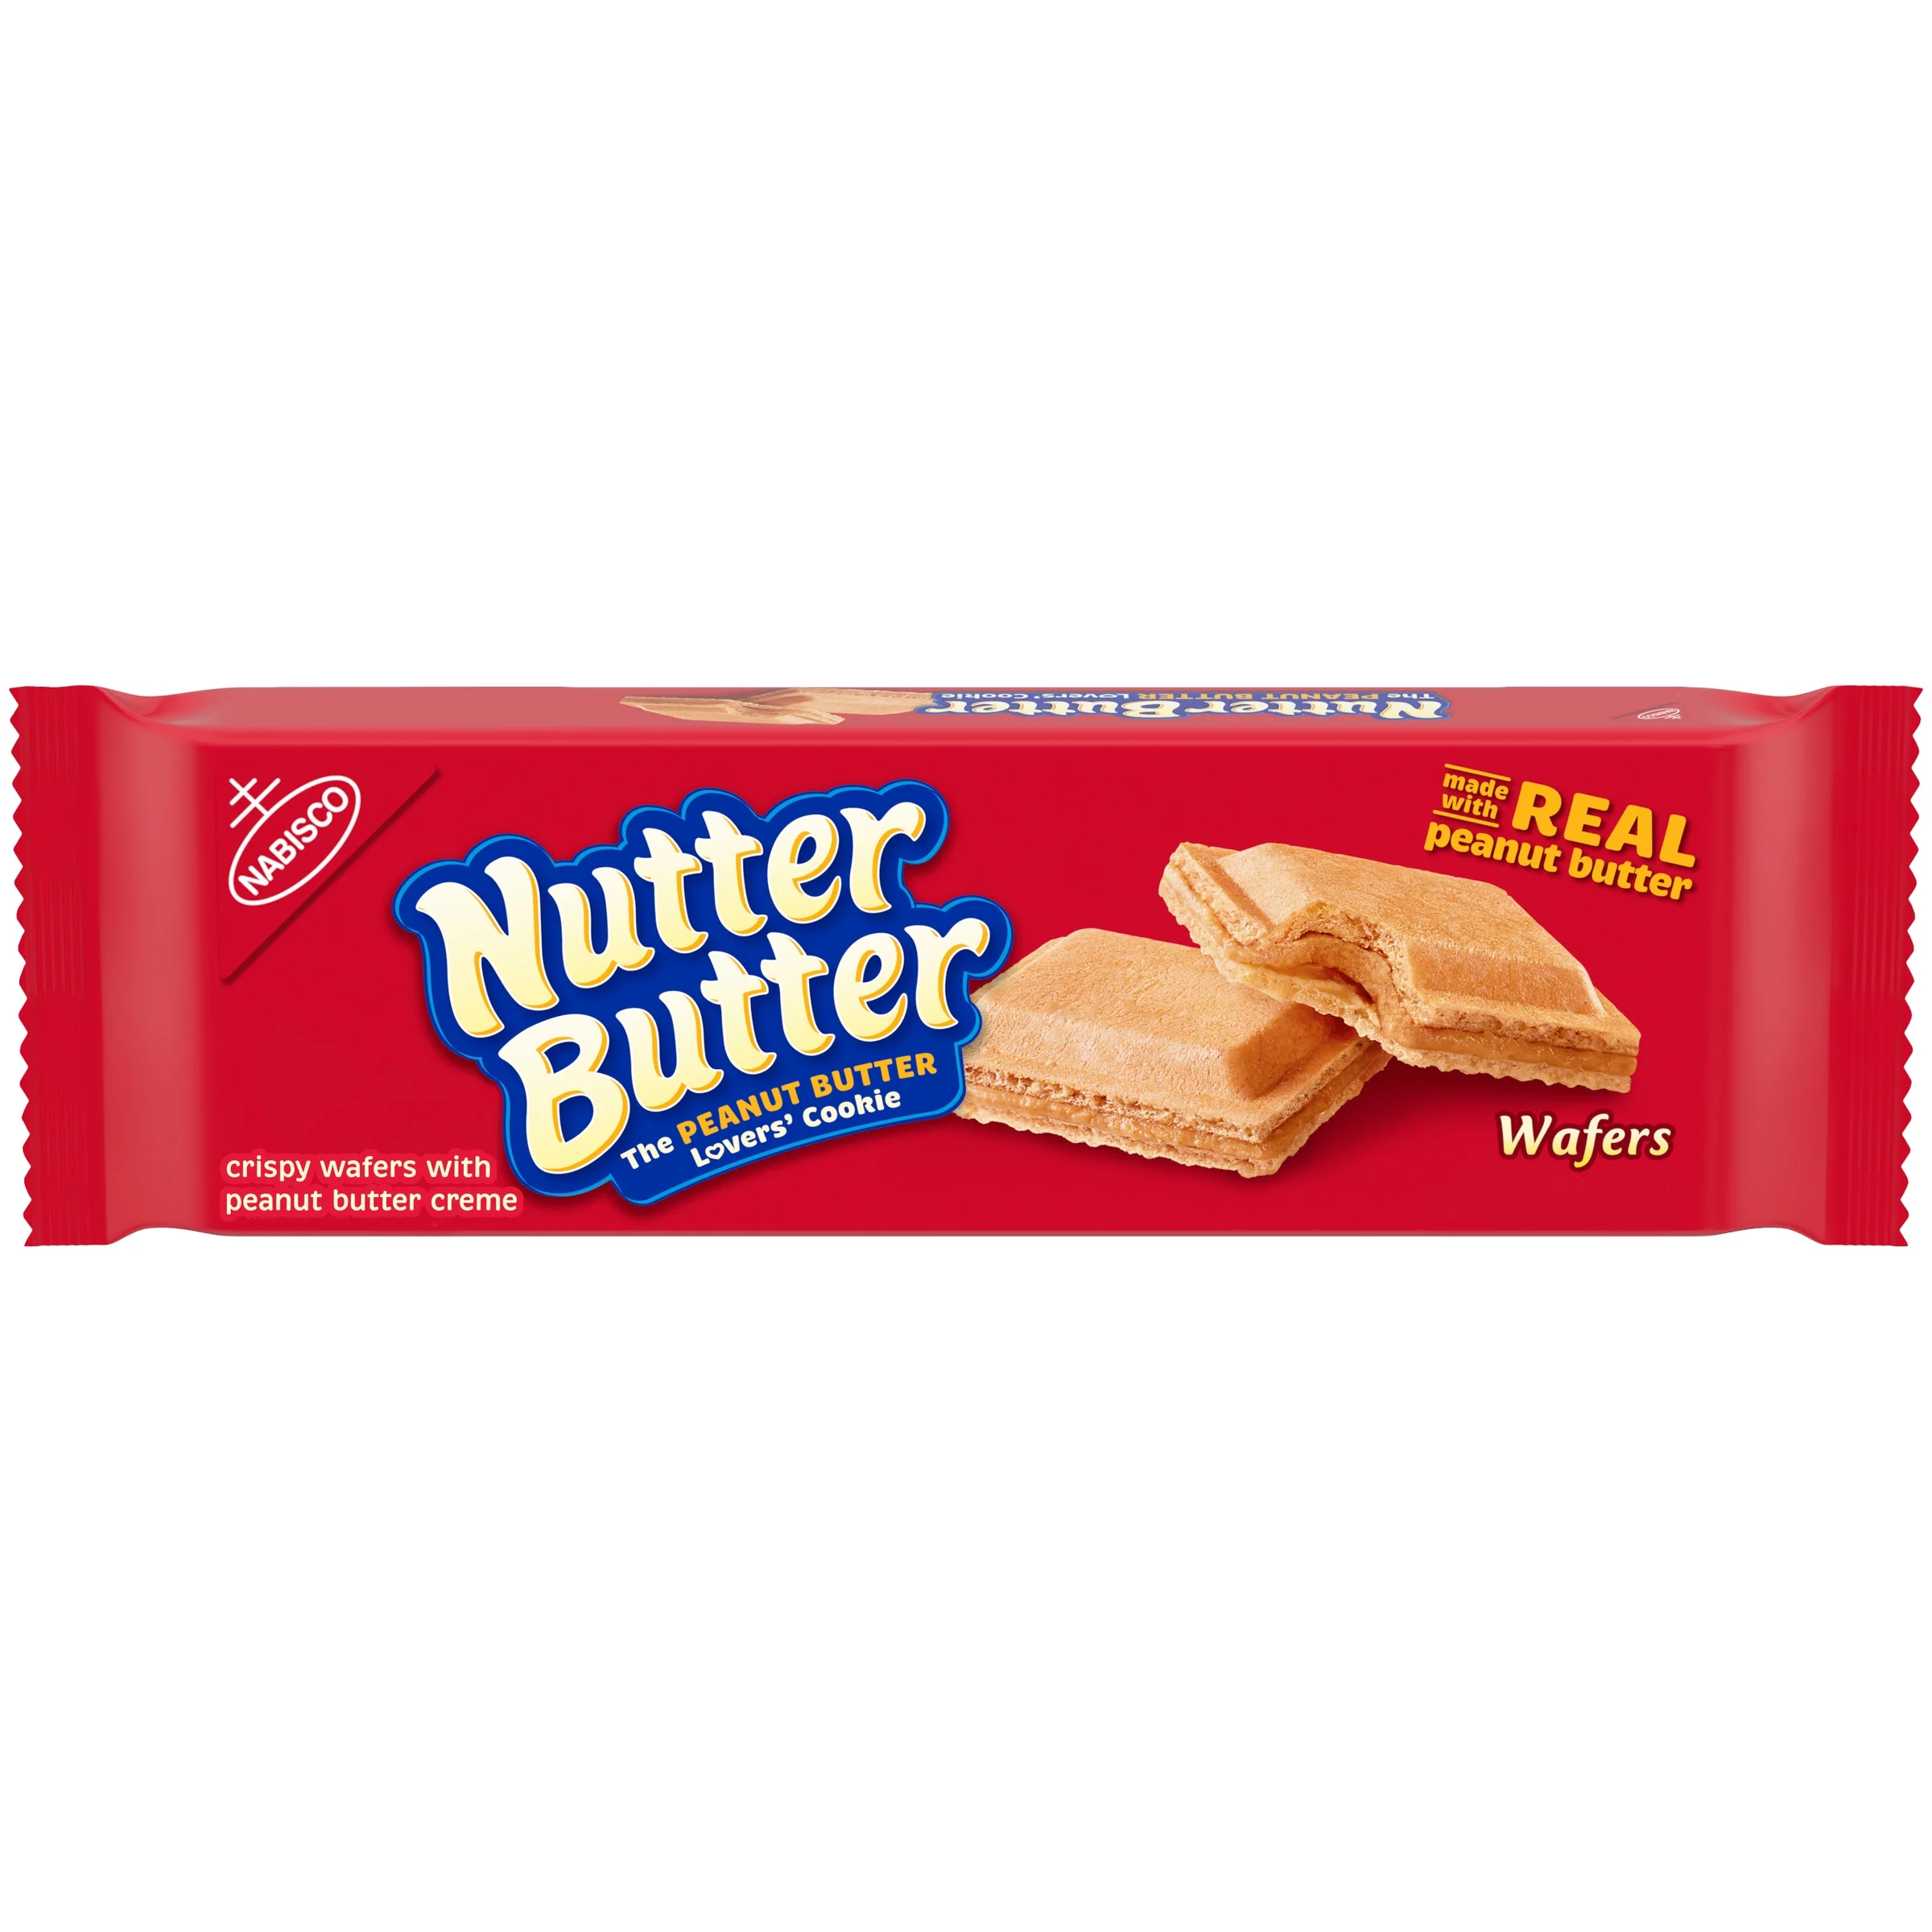 Nutter Butter Peanut Butter Wafer Cookies, 10.5 oz